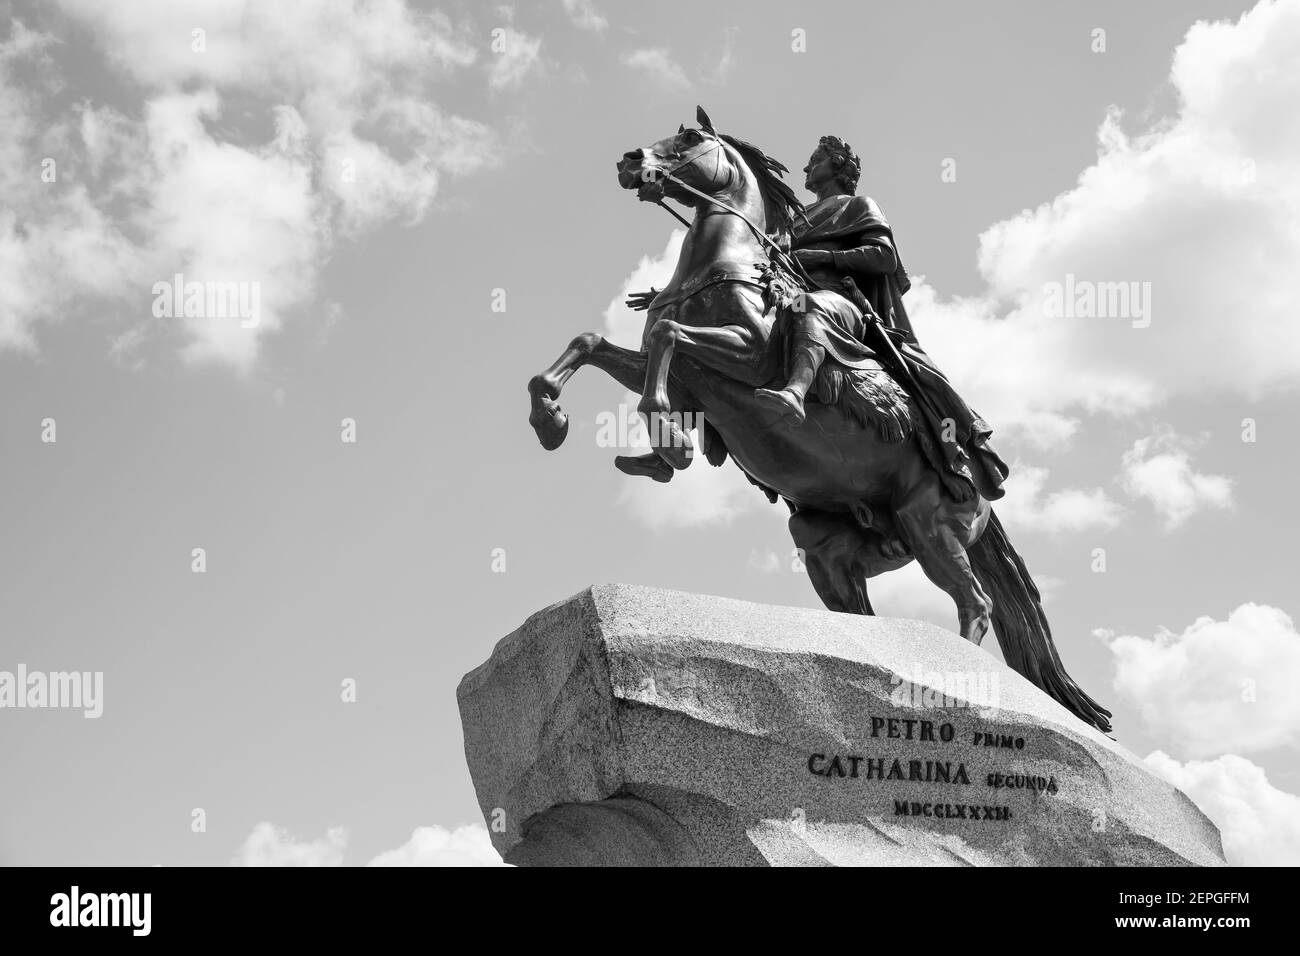 L'Horseman di bronzo di Falconet (1782) - statua equestre di Pietro il Grande nella Piazza del Senato a San Pietroburgo, Russia. Foto in bianco e nero Foto Stock